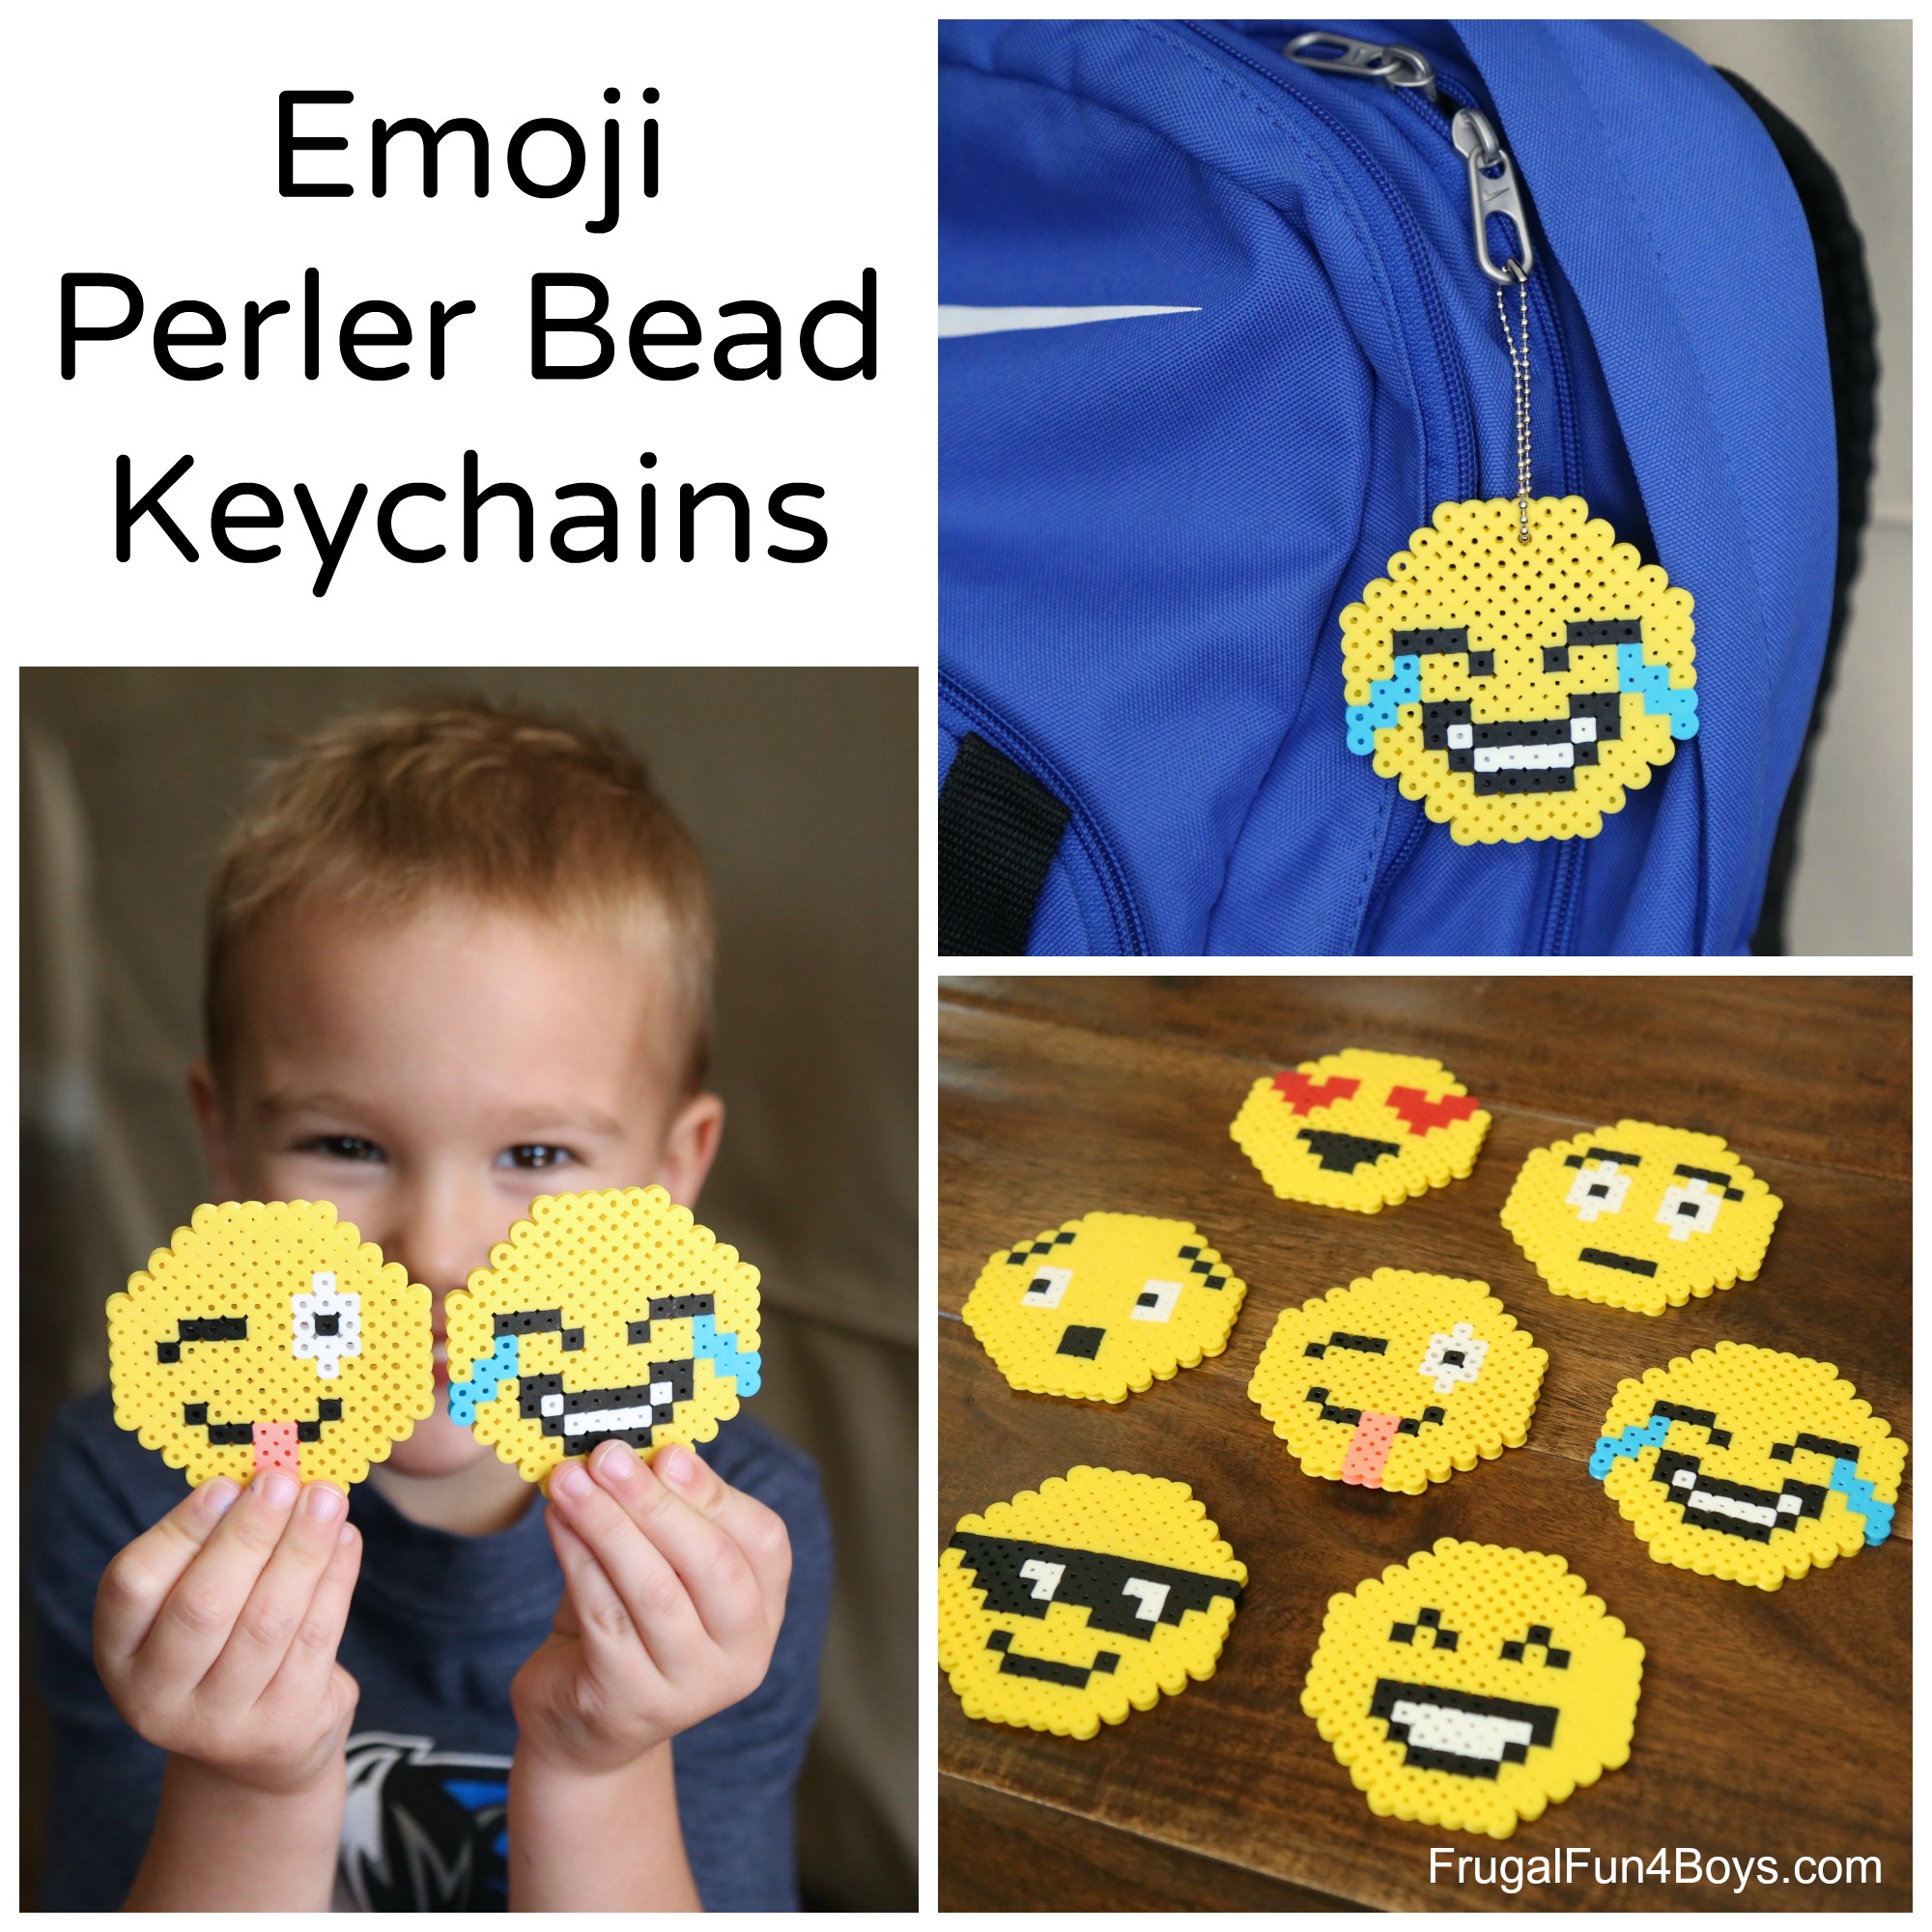 Emoji Perler Bead Keychain Designs